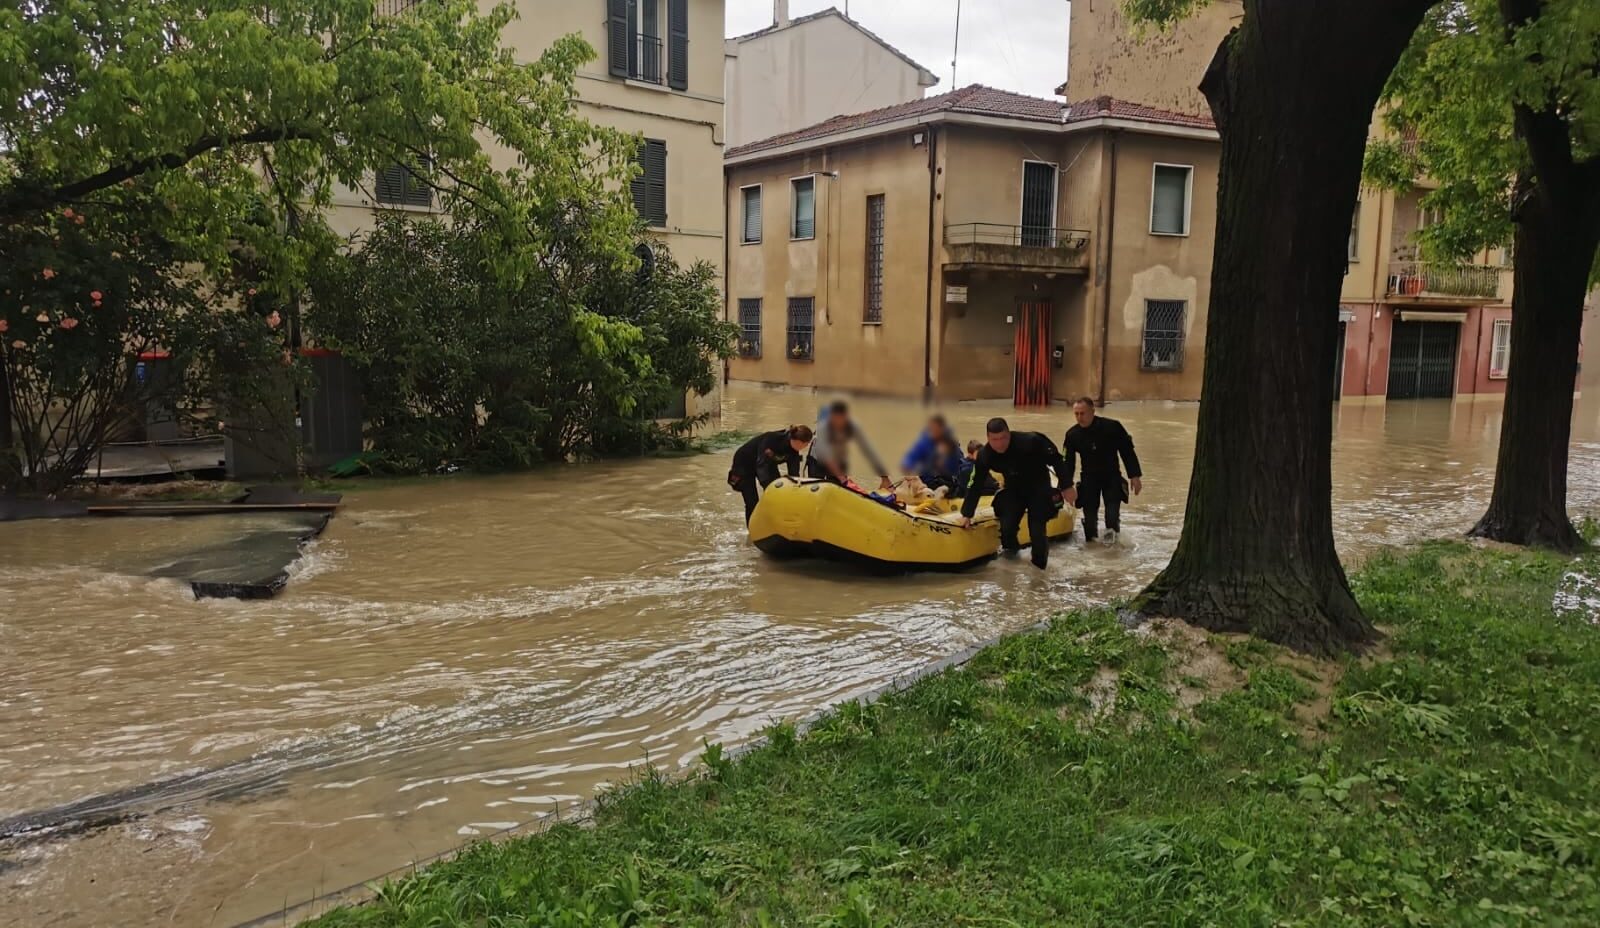 Sale a 14 il numero dei morti a causa delle alluvioni. E anche oggi in Emilia Romagna è allerta rossa